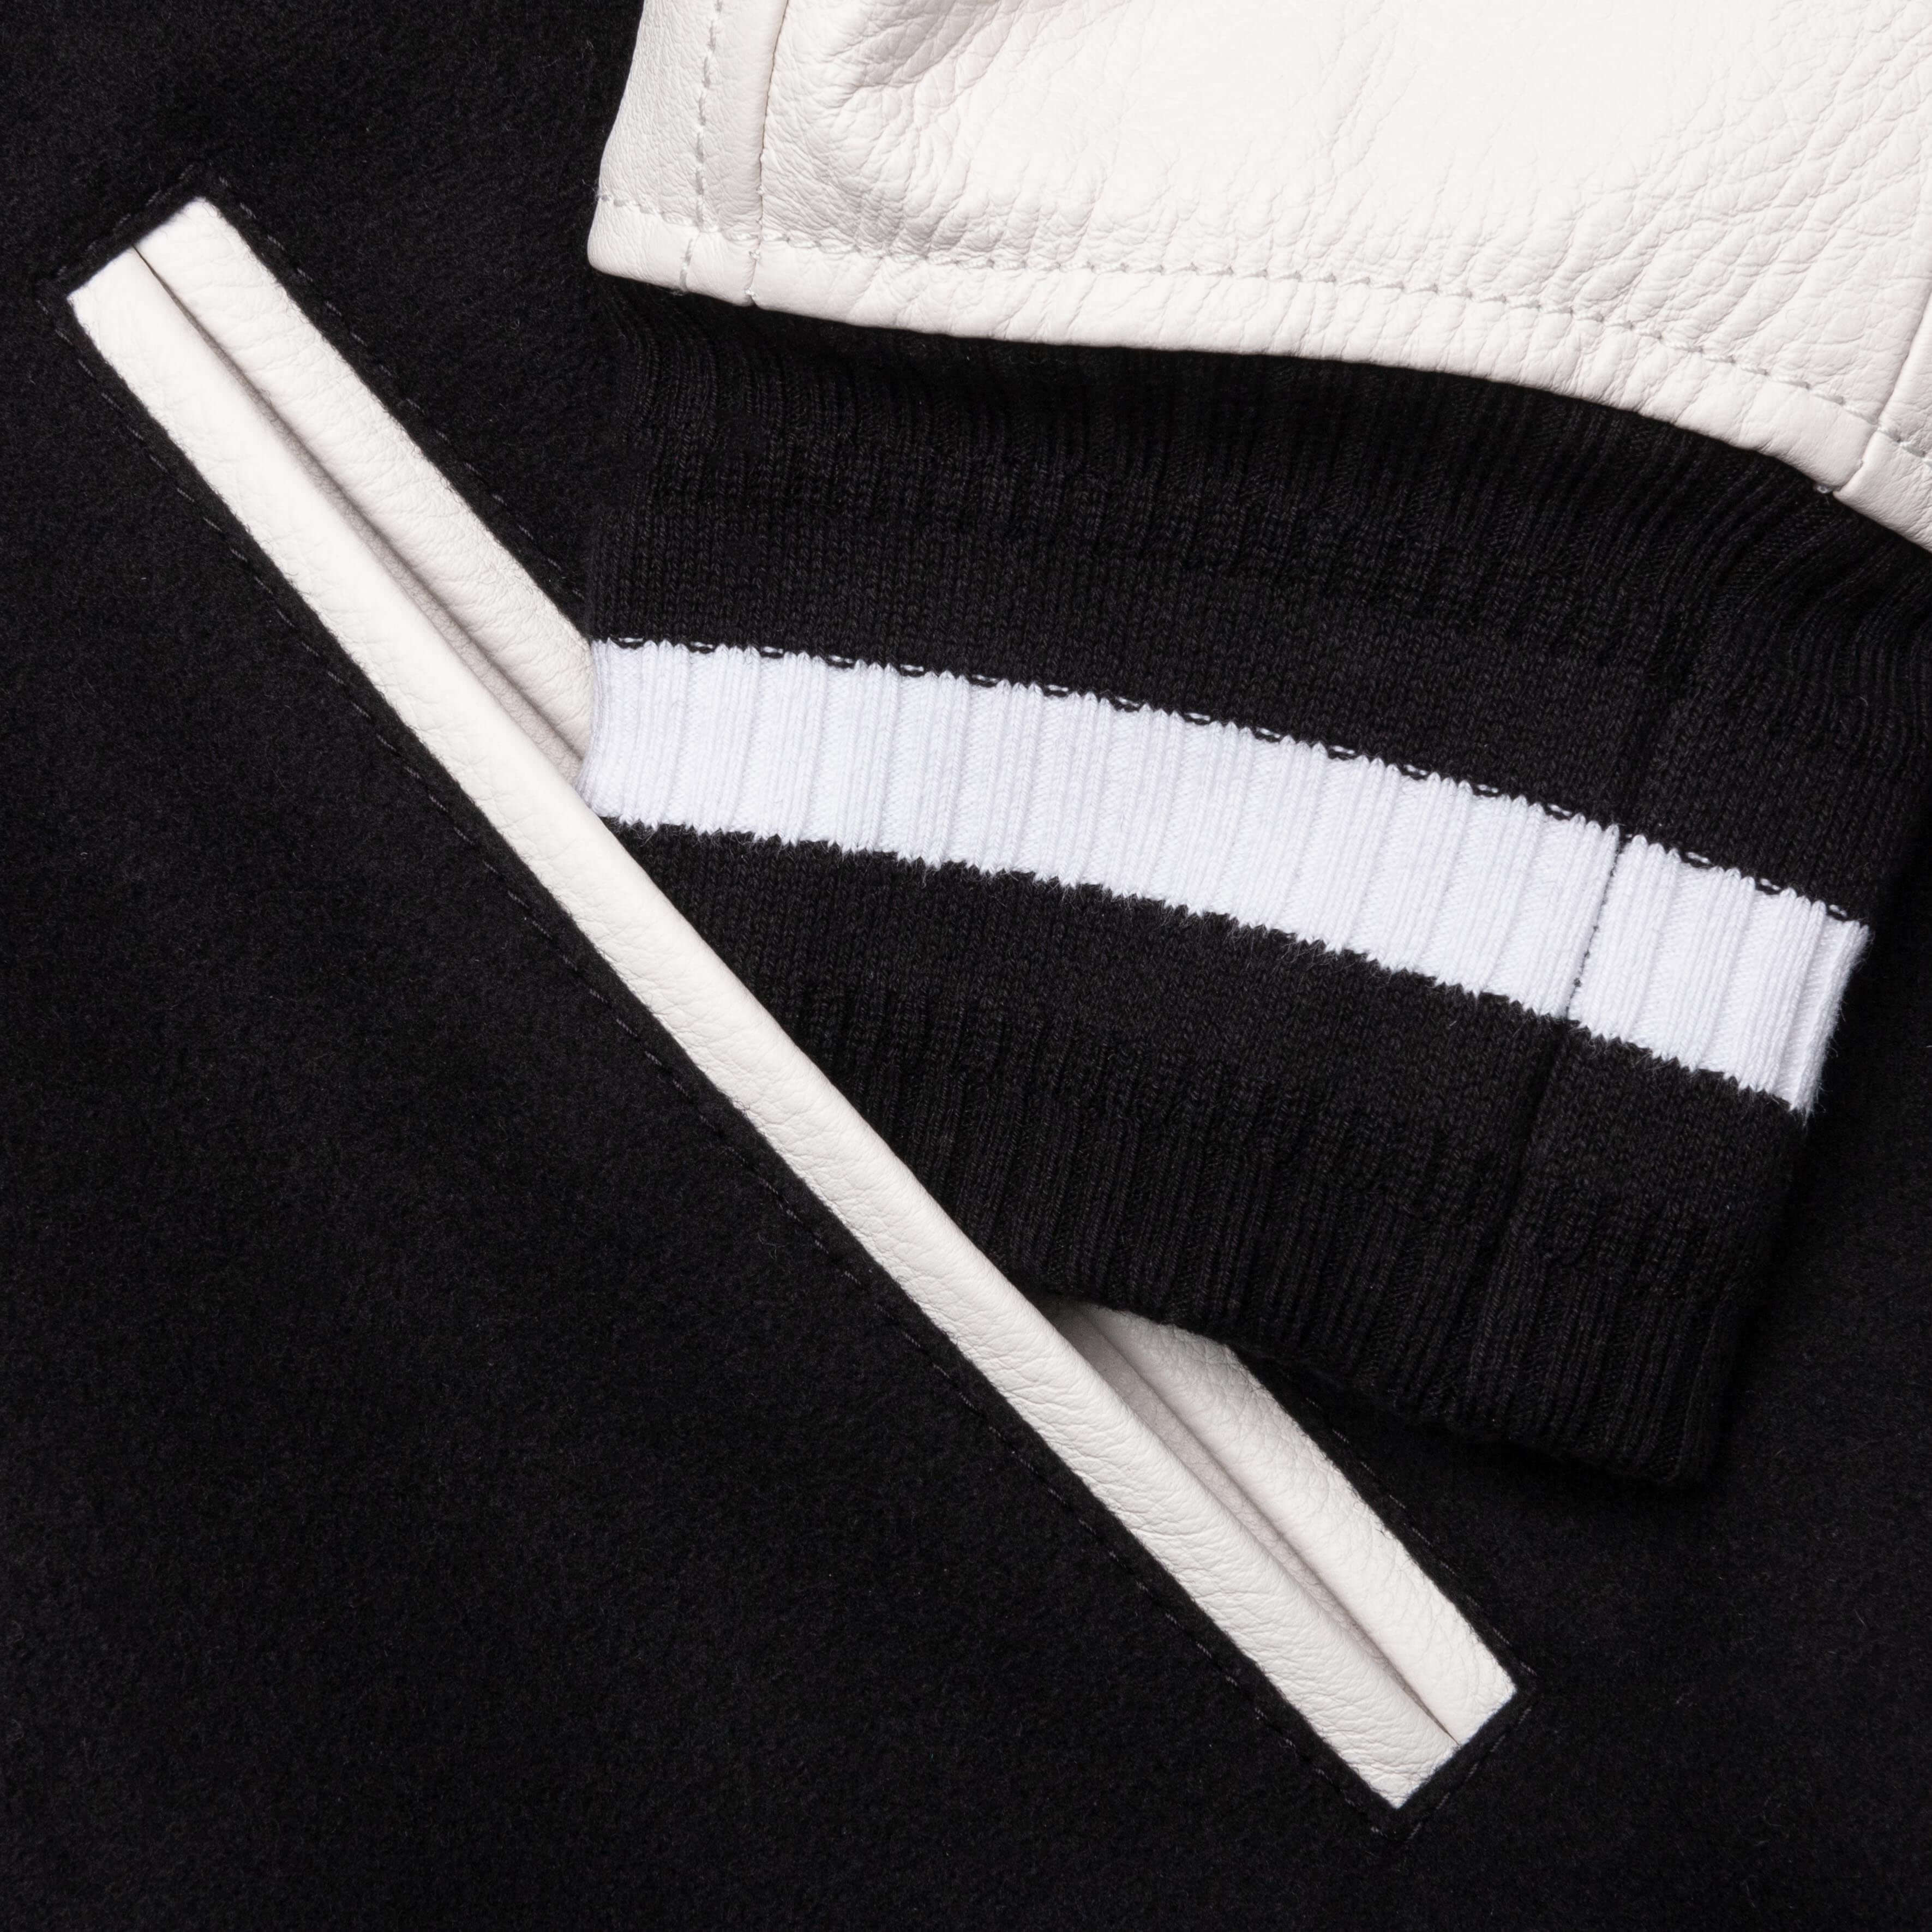 Varsity Jacket - Black/White, , large image number null